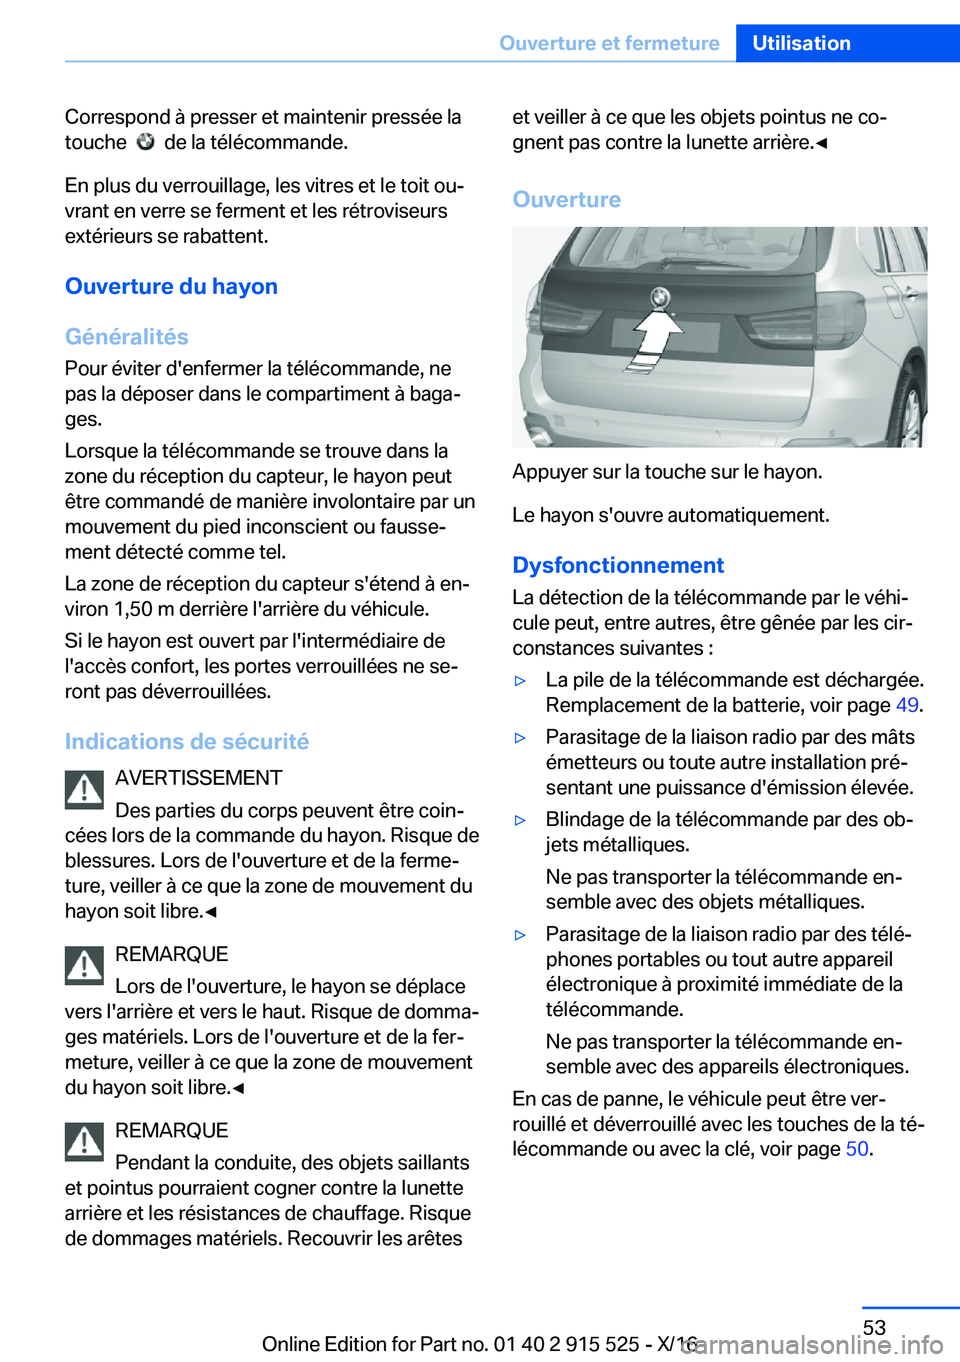 BMW X5 2017  Notices Demploi (in French) �C�o�r�r�e�s�p�o�n�d� �à� �p�r�e�s�s�e�r� �e�t� �m�a�i�n�t�e�n�i�r� �p�r�e�s�s�é�e� �l�a�t�o�u�c�h�e� � 
� � �d�e� �l�a� �t�é�l�é�c�o�m�m�a�n�d�e�.
�E�n� �p�l�u�s� �d�u� �v�e�r�r�o�u�i�l�l�a�g�e�,